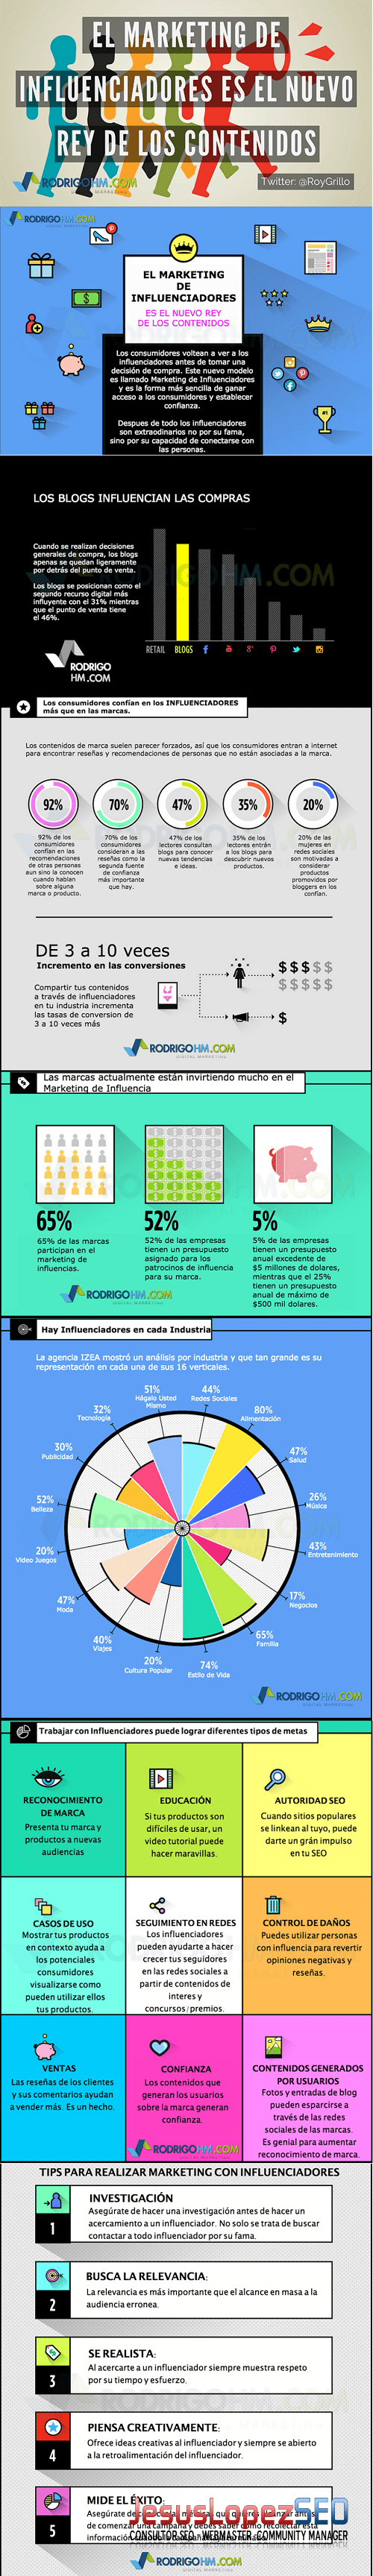 Tipos de influencers en redes sociales-Infografía